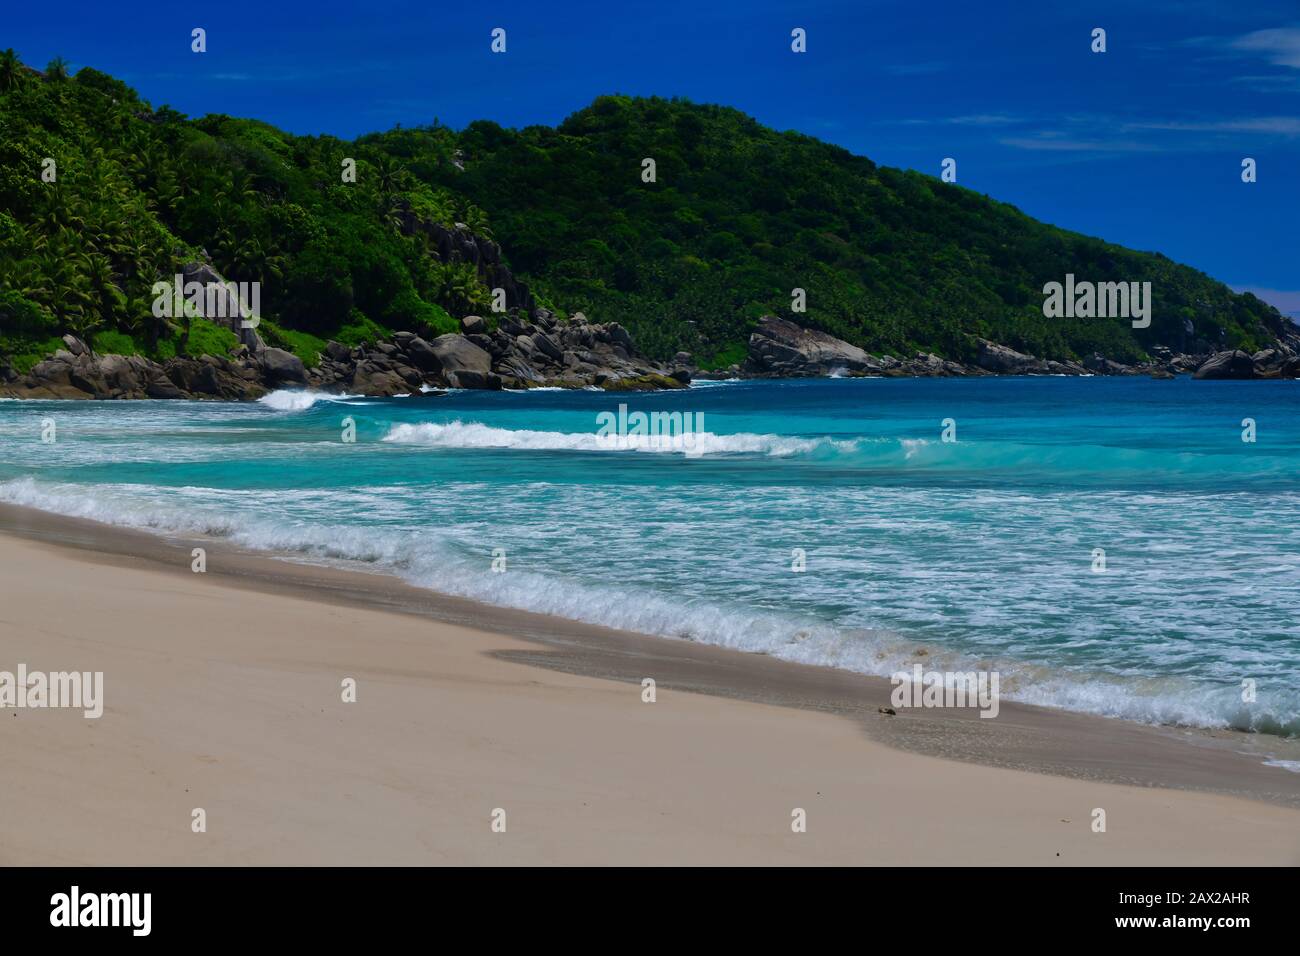 Vagues de l'océan et rochers de granit - Baie de police, Ile de Mahe, Seychelles. Banque D'Images